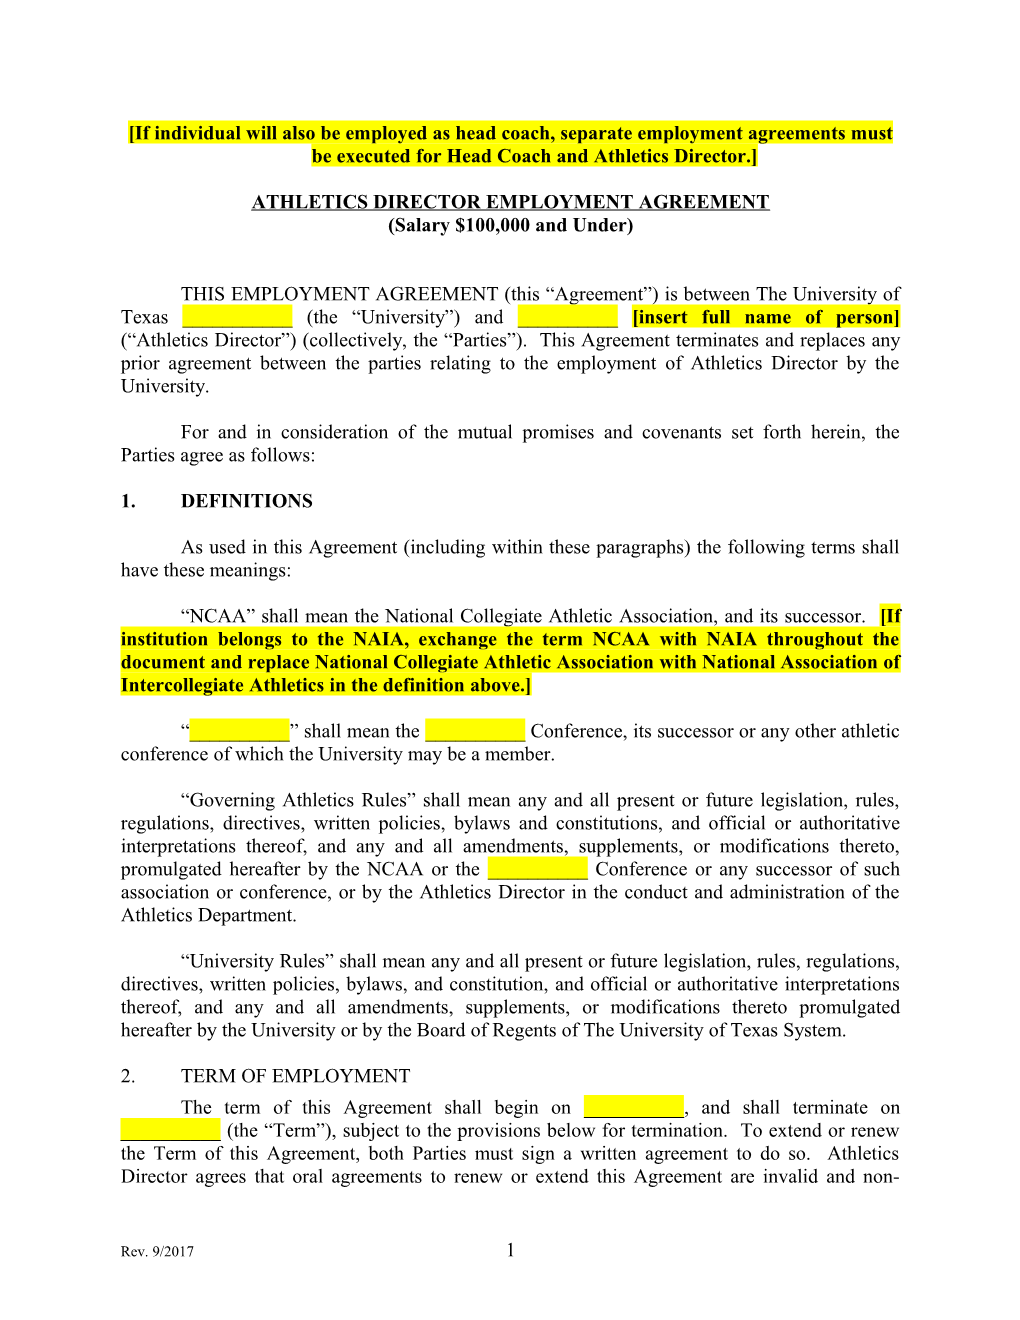 Athletics Directoremployment Agreement